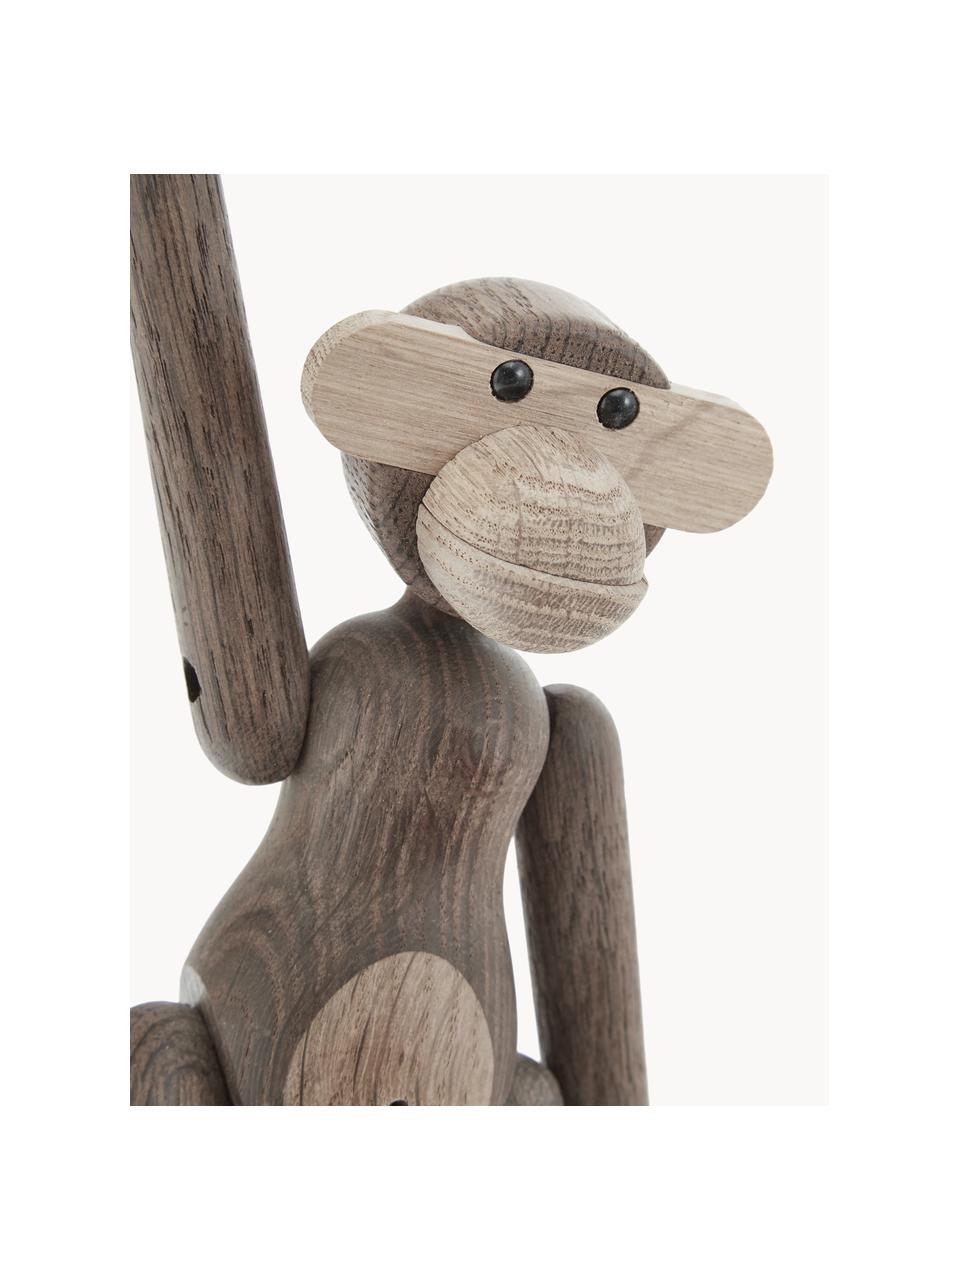 Designová dekorace z dubového dřeva Monkey, V 19 cm, Lakované dubové dřevo, certifikace FSC, Dubové dřevo, Š 20 cm, V 19 cm